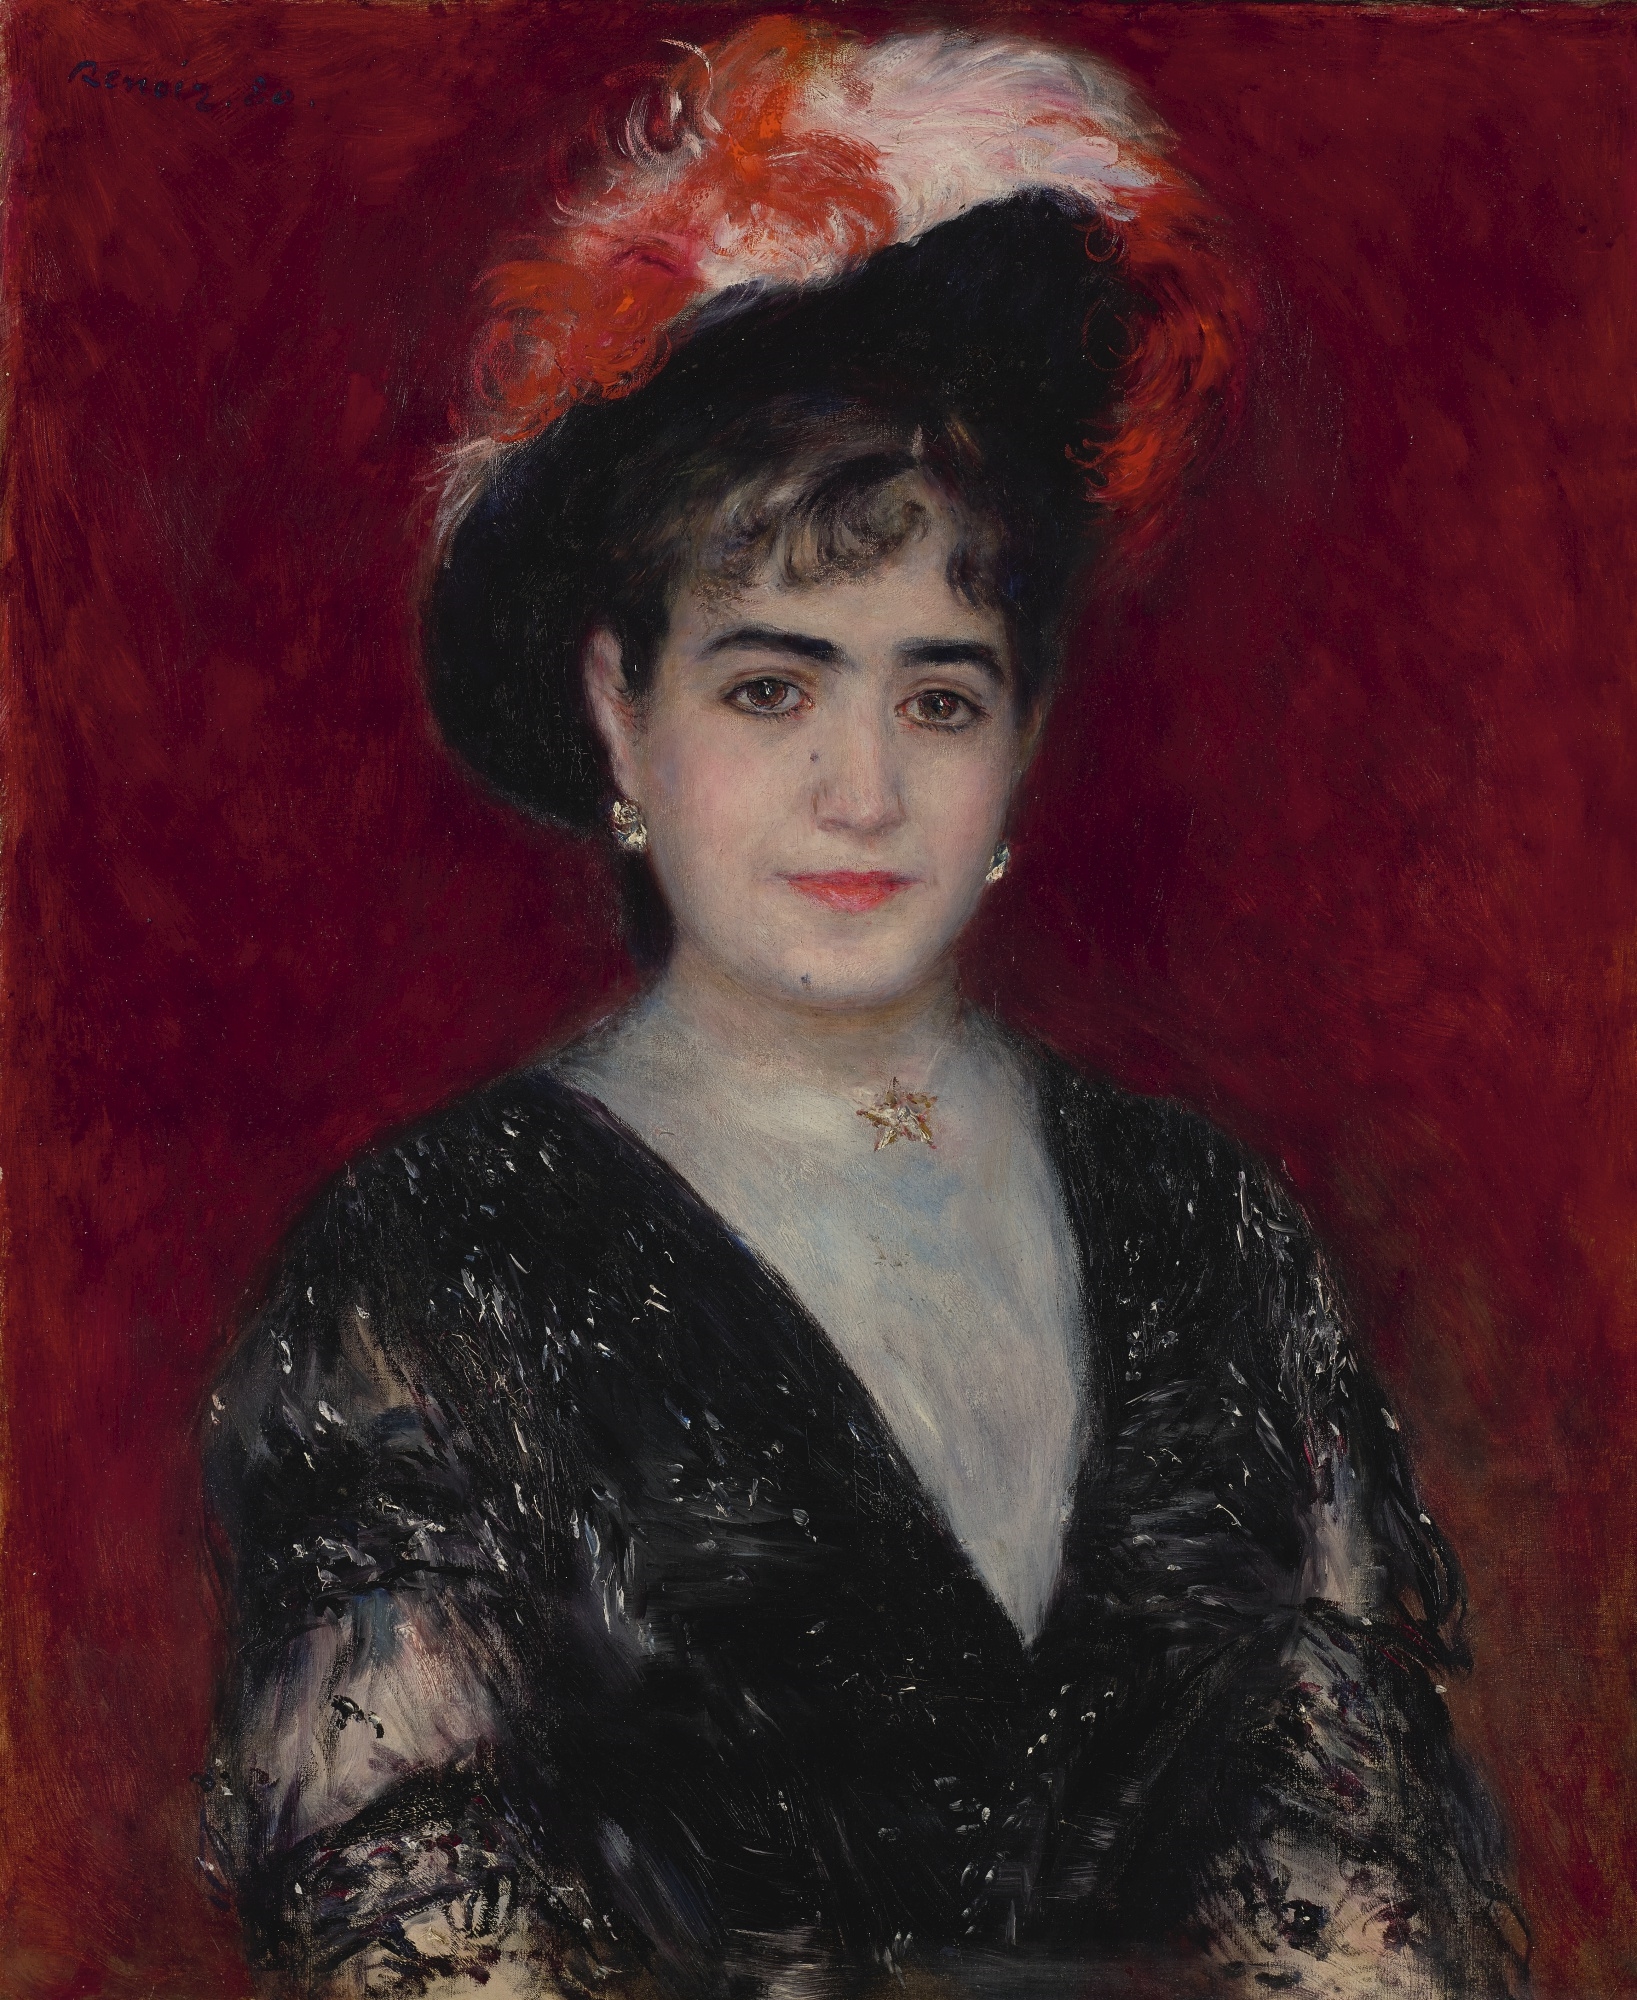 PORTRAIT DE MADAME ADELA OCAMPO DE HEIMENDHAL by Pierre-Auguste Renoir, 1880